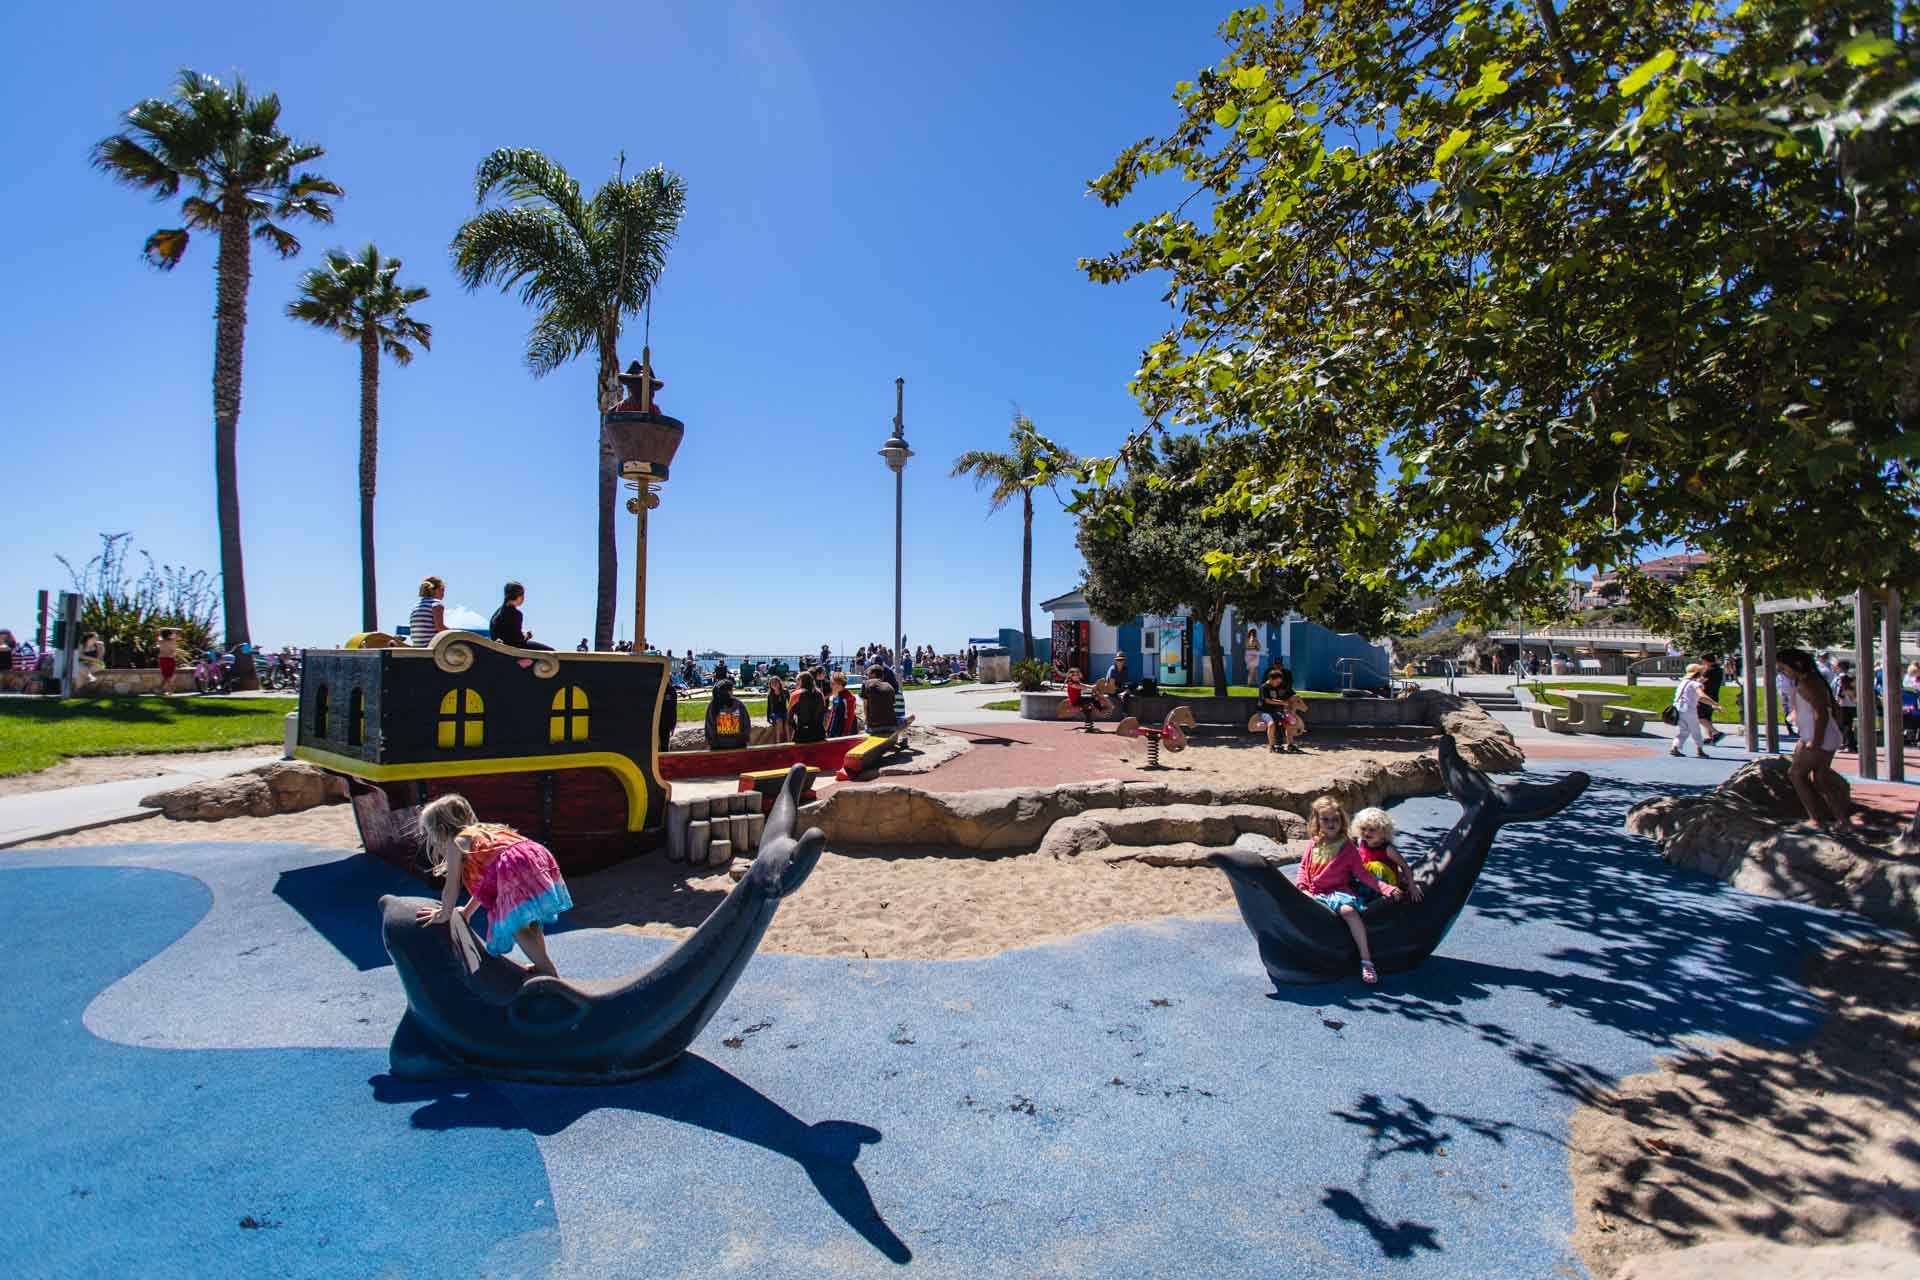 Pirate playground, Avila Beach